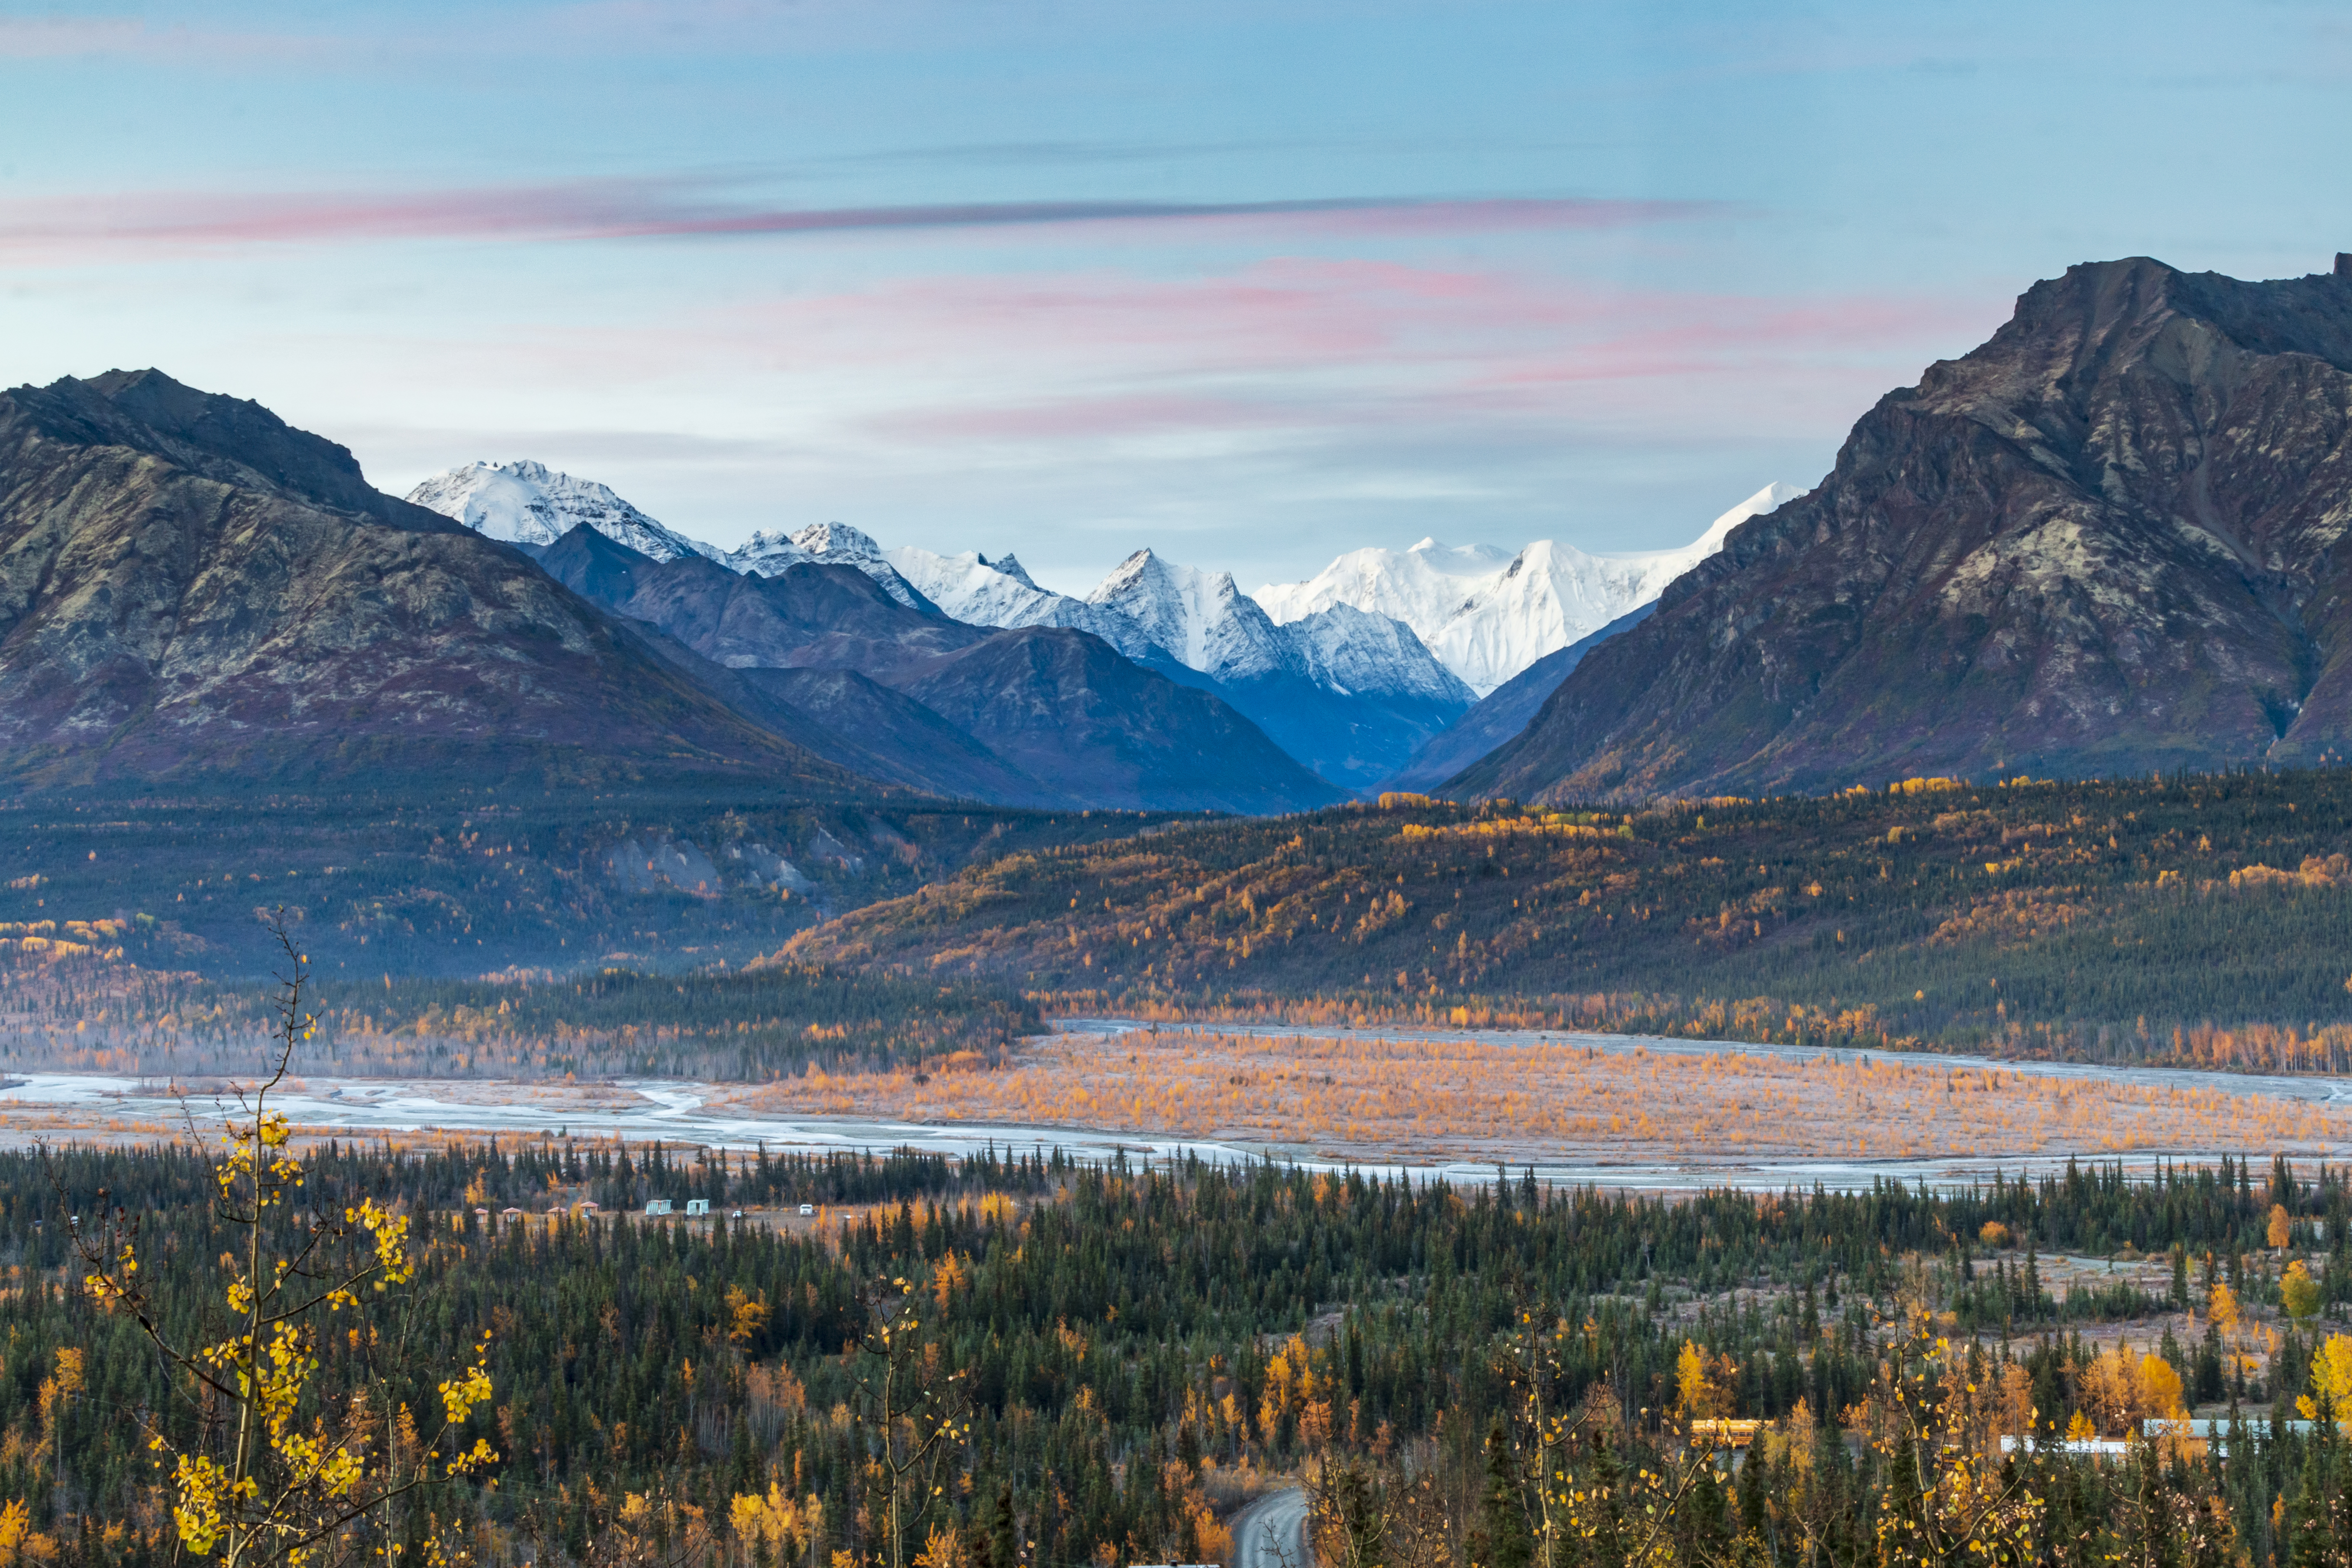 spettacolare paesaggio di foglie autunnali giallo dorato di pioppi tremuli e betulle e montagne innevate della catena montuosa Chugach in Alaska.